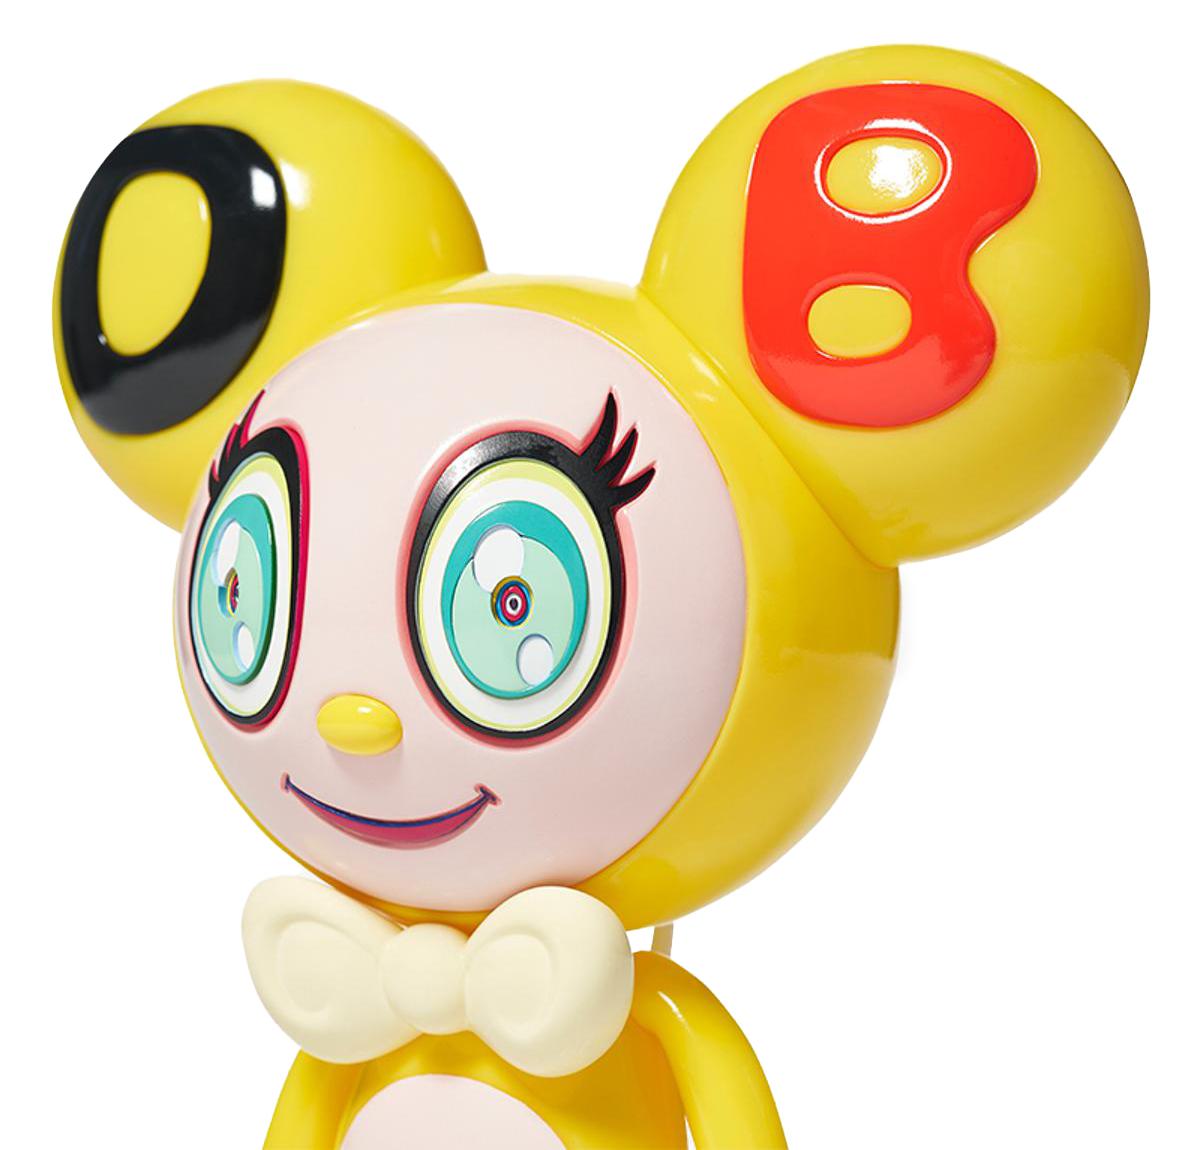 Takashi Murakami DOB-kun Figur (Takashi Murakami Mr. Dob):
Ein limitiertes Takashi Murakami Mr. DOB Kunstspielzeug mit der kultigen DOB Figur des Künstlers. DOB-kuns Name, der sich in seinen abgerundeten Ohren und seinem Gesicht widerspiegelt, sind